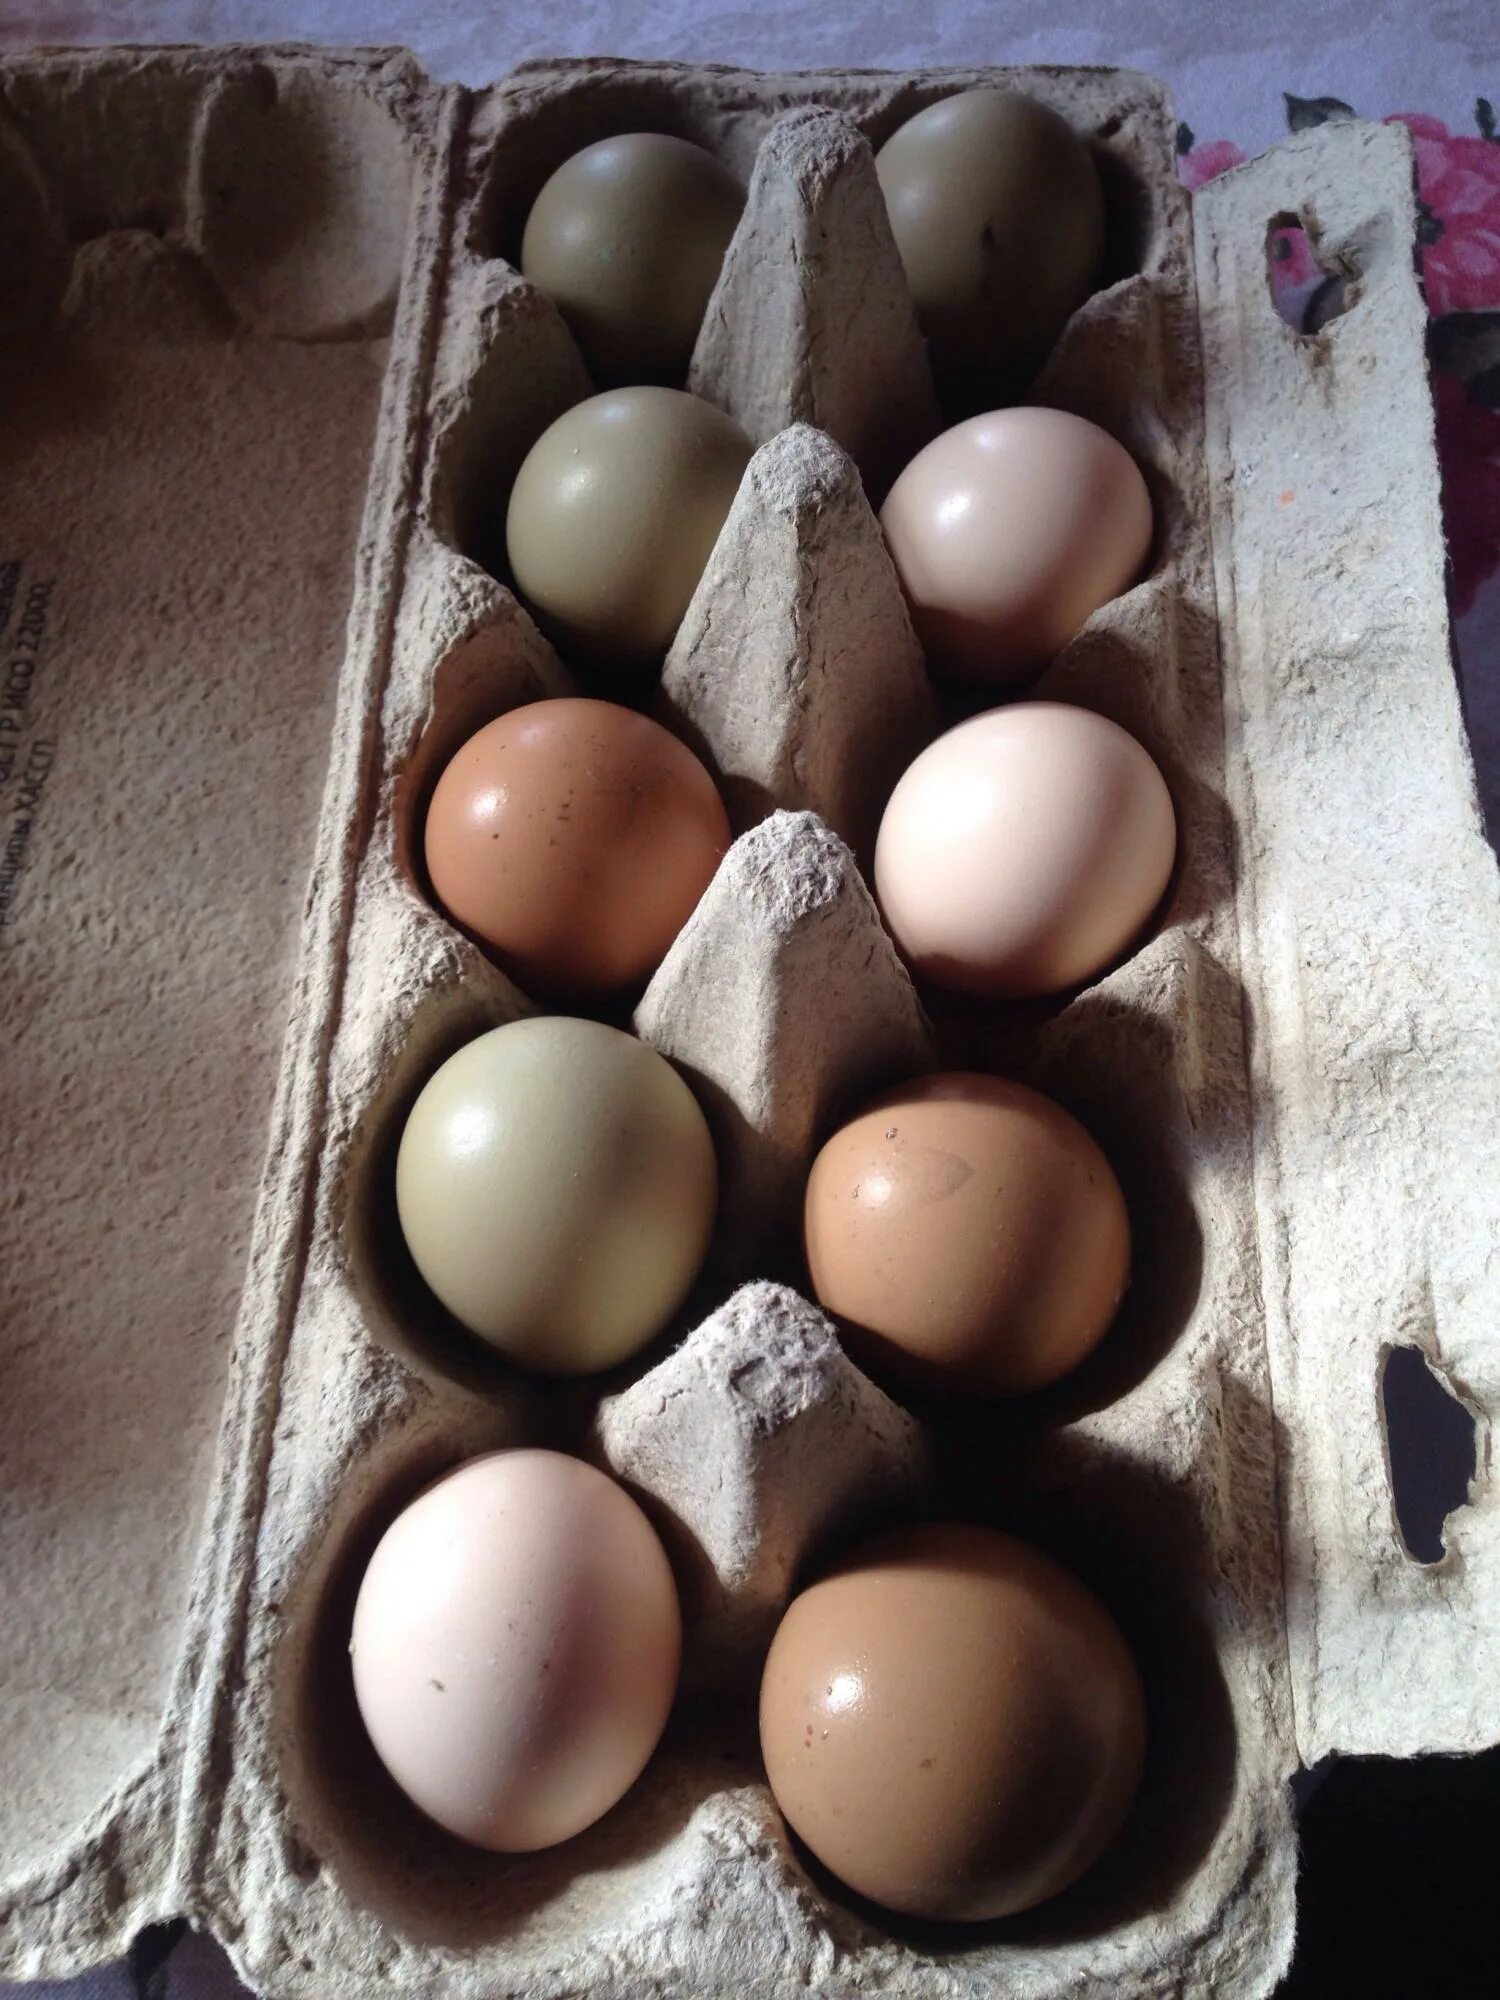 Яйца фазана купить. Яйцо фазана инкубационное. Инкубация фазаньих яиц. Маркировка инкубационного яйца f7203. Яйцо фазана румынского.